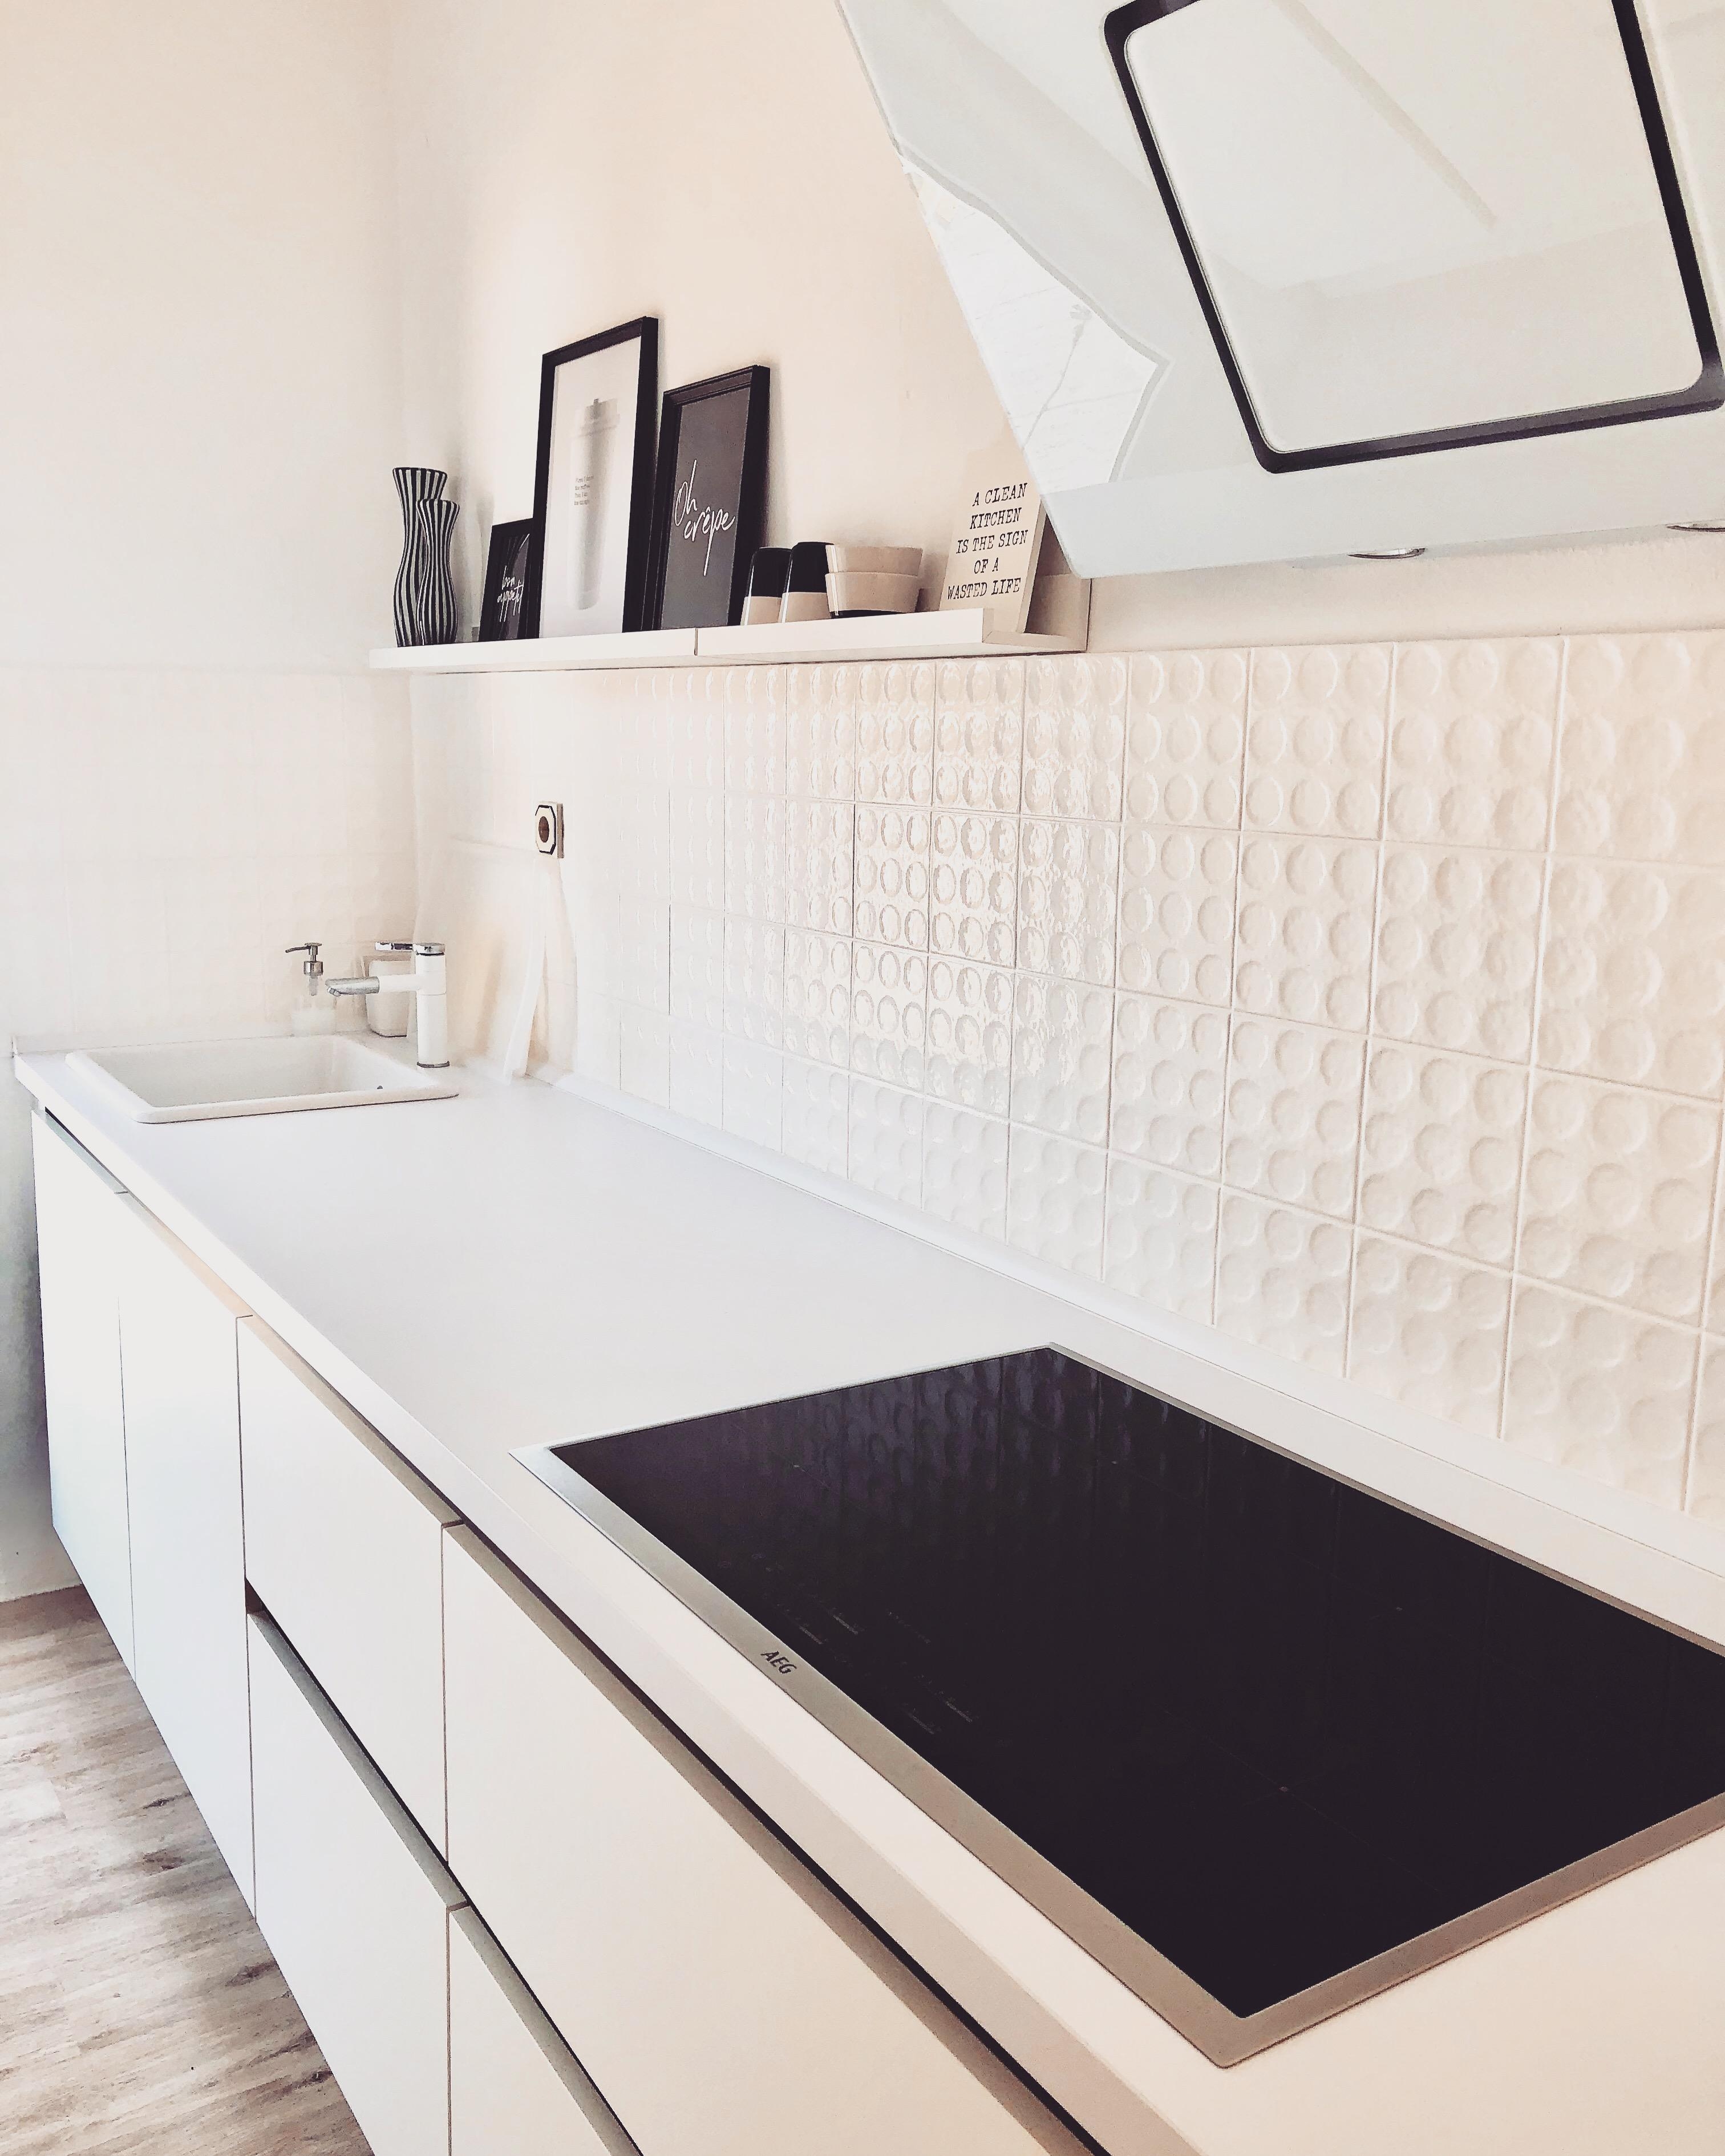 #blackandwhite #modern #scandi 
Meine Küche ist ziemlich clean gehalten und eher modern.